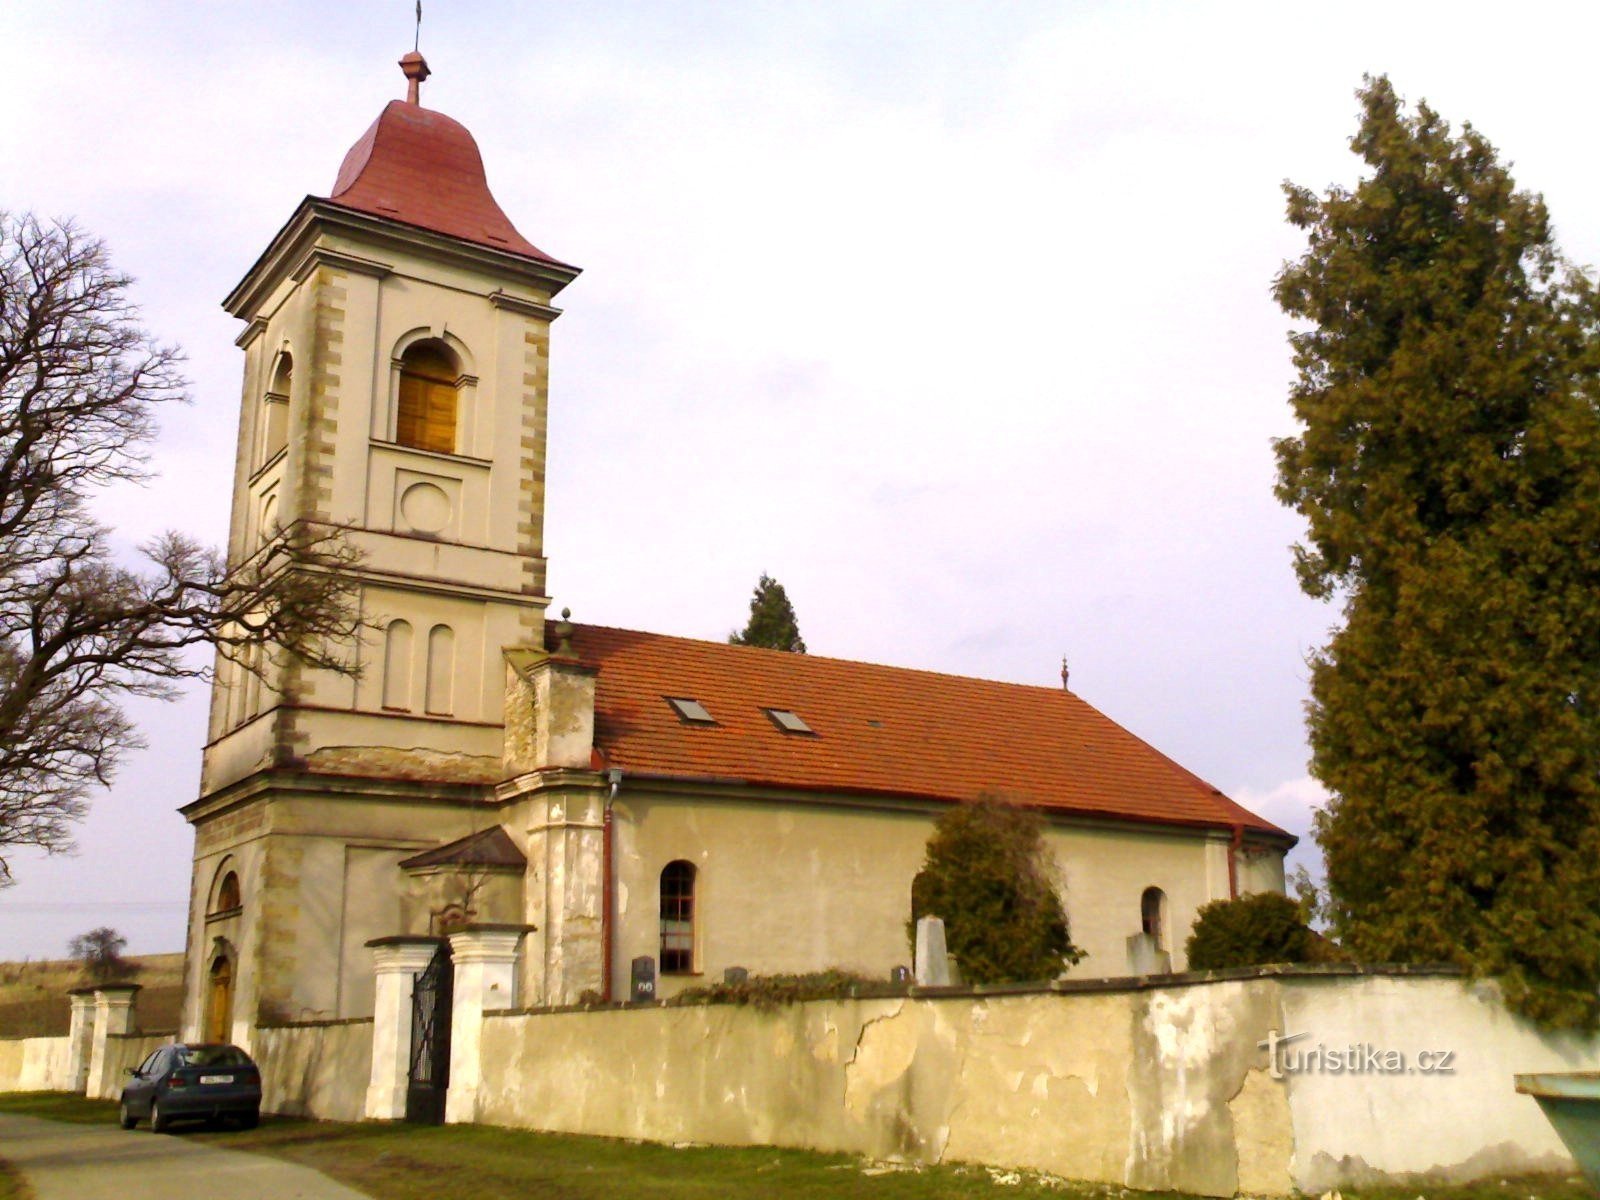 Klášter nad Dědinou - nhà thờ của Giáo hội Tin lành Anh em Séc